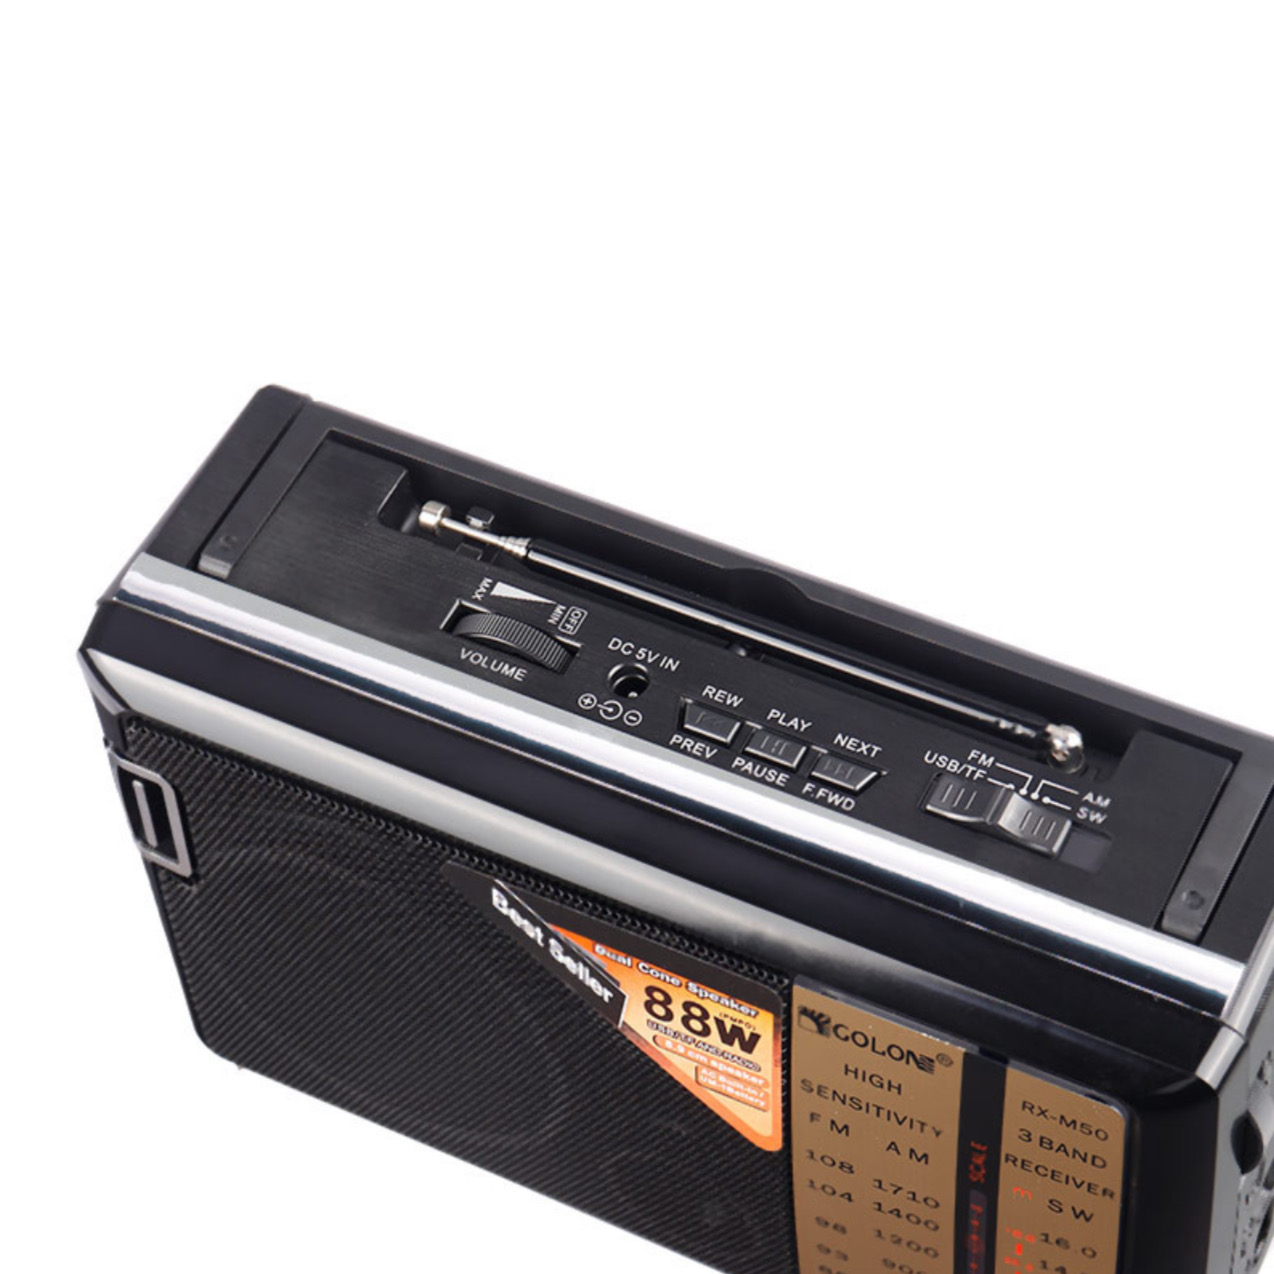 رادیو گولون مدل RX-M50